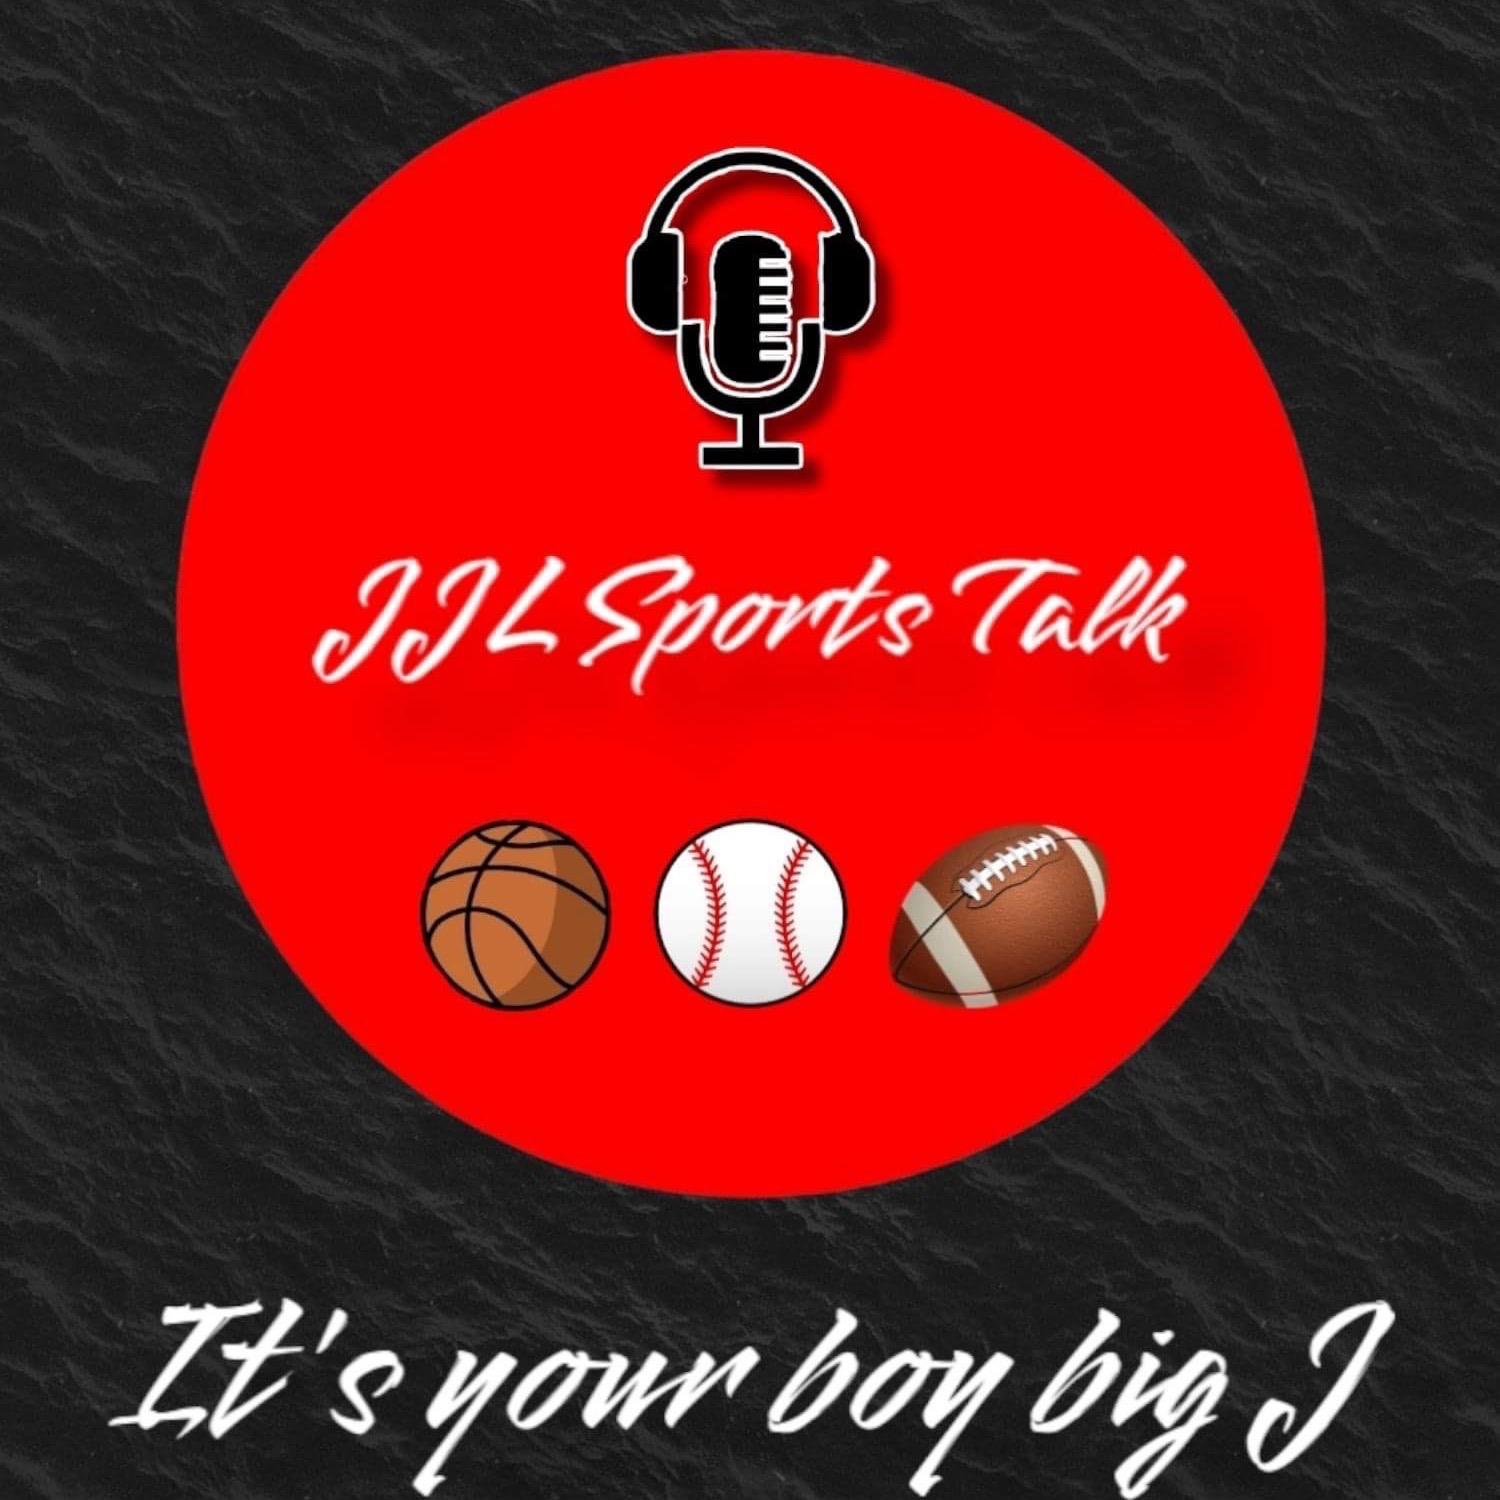 JJL sports talk